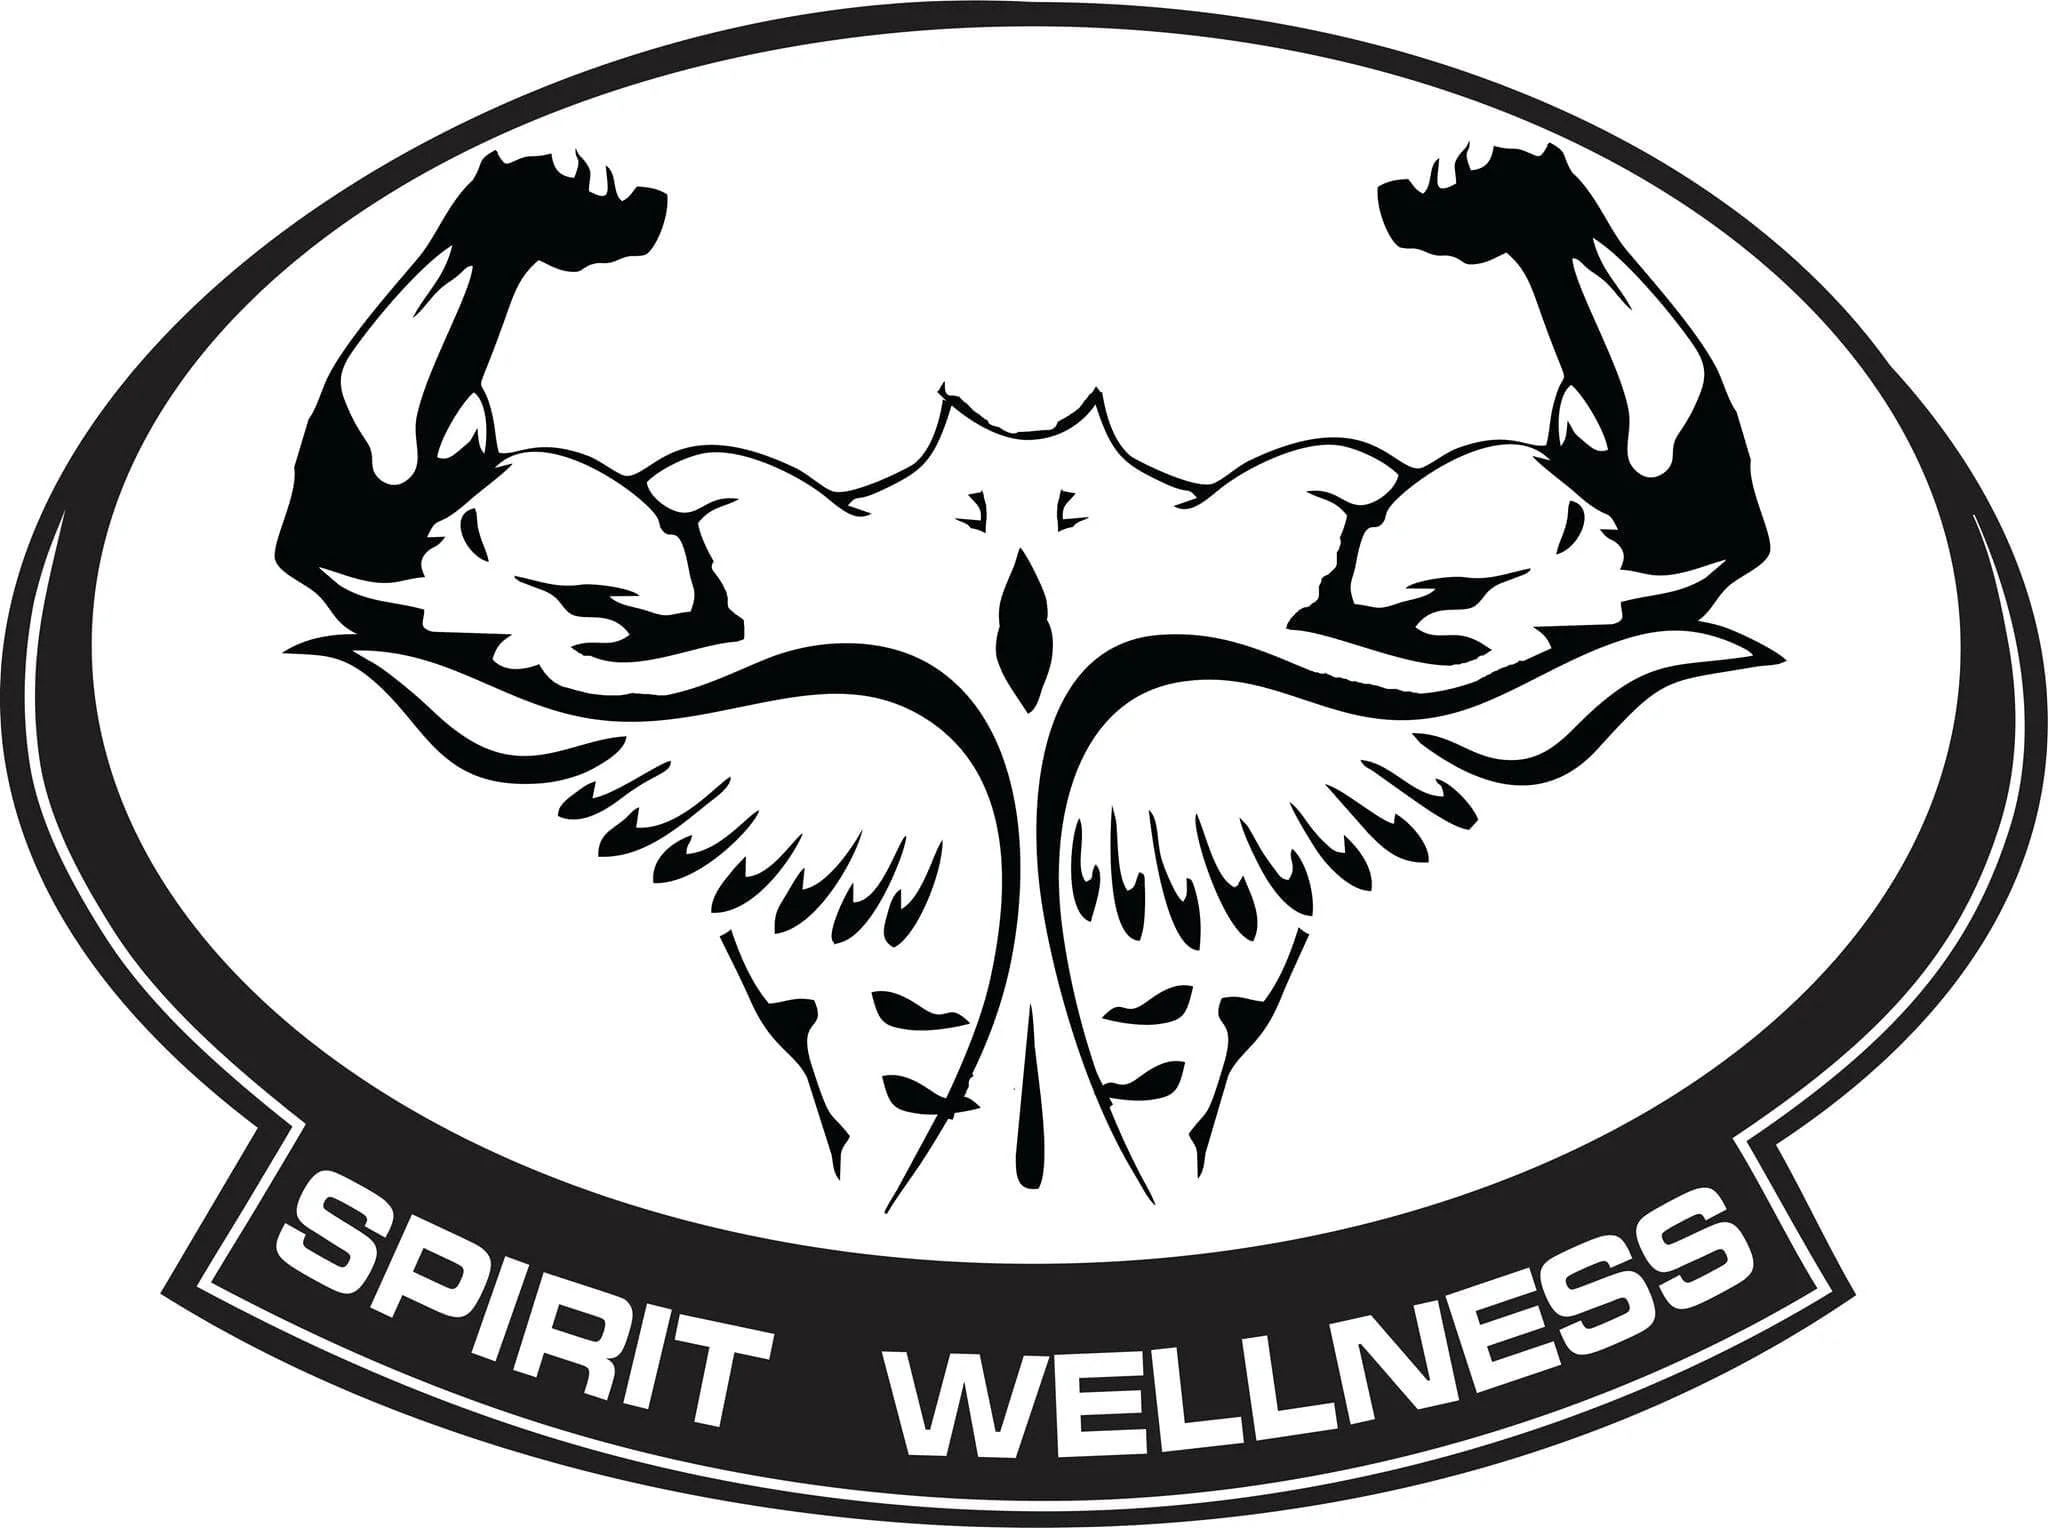 Caf spirit Wellness-1278